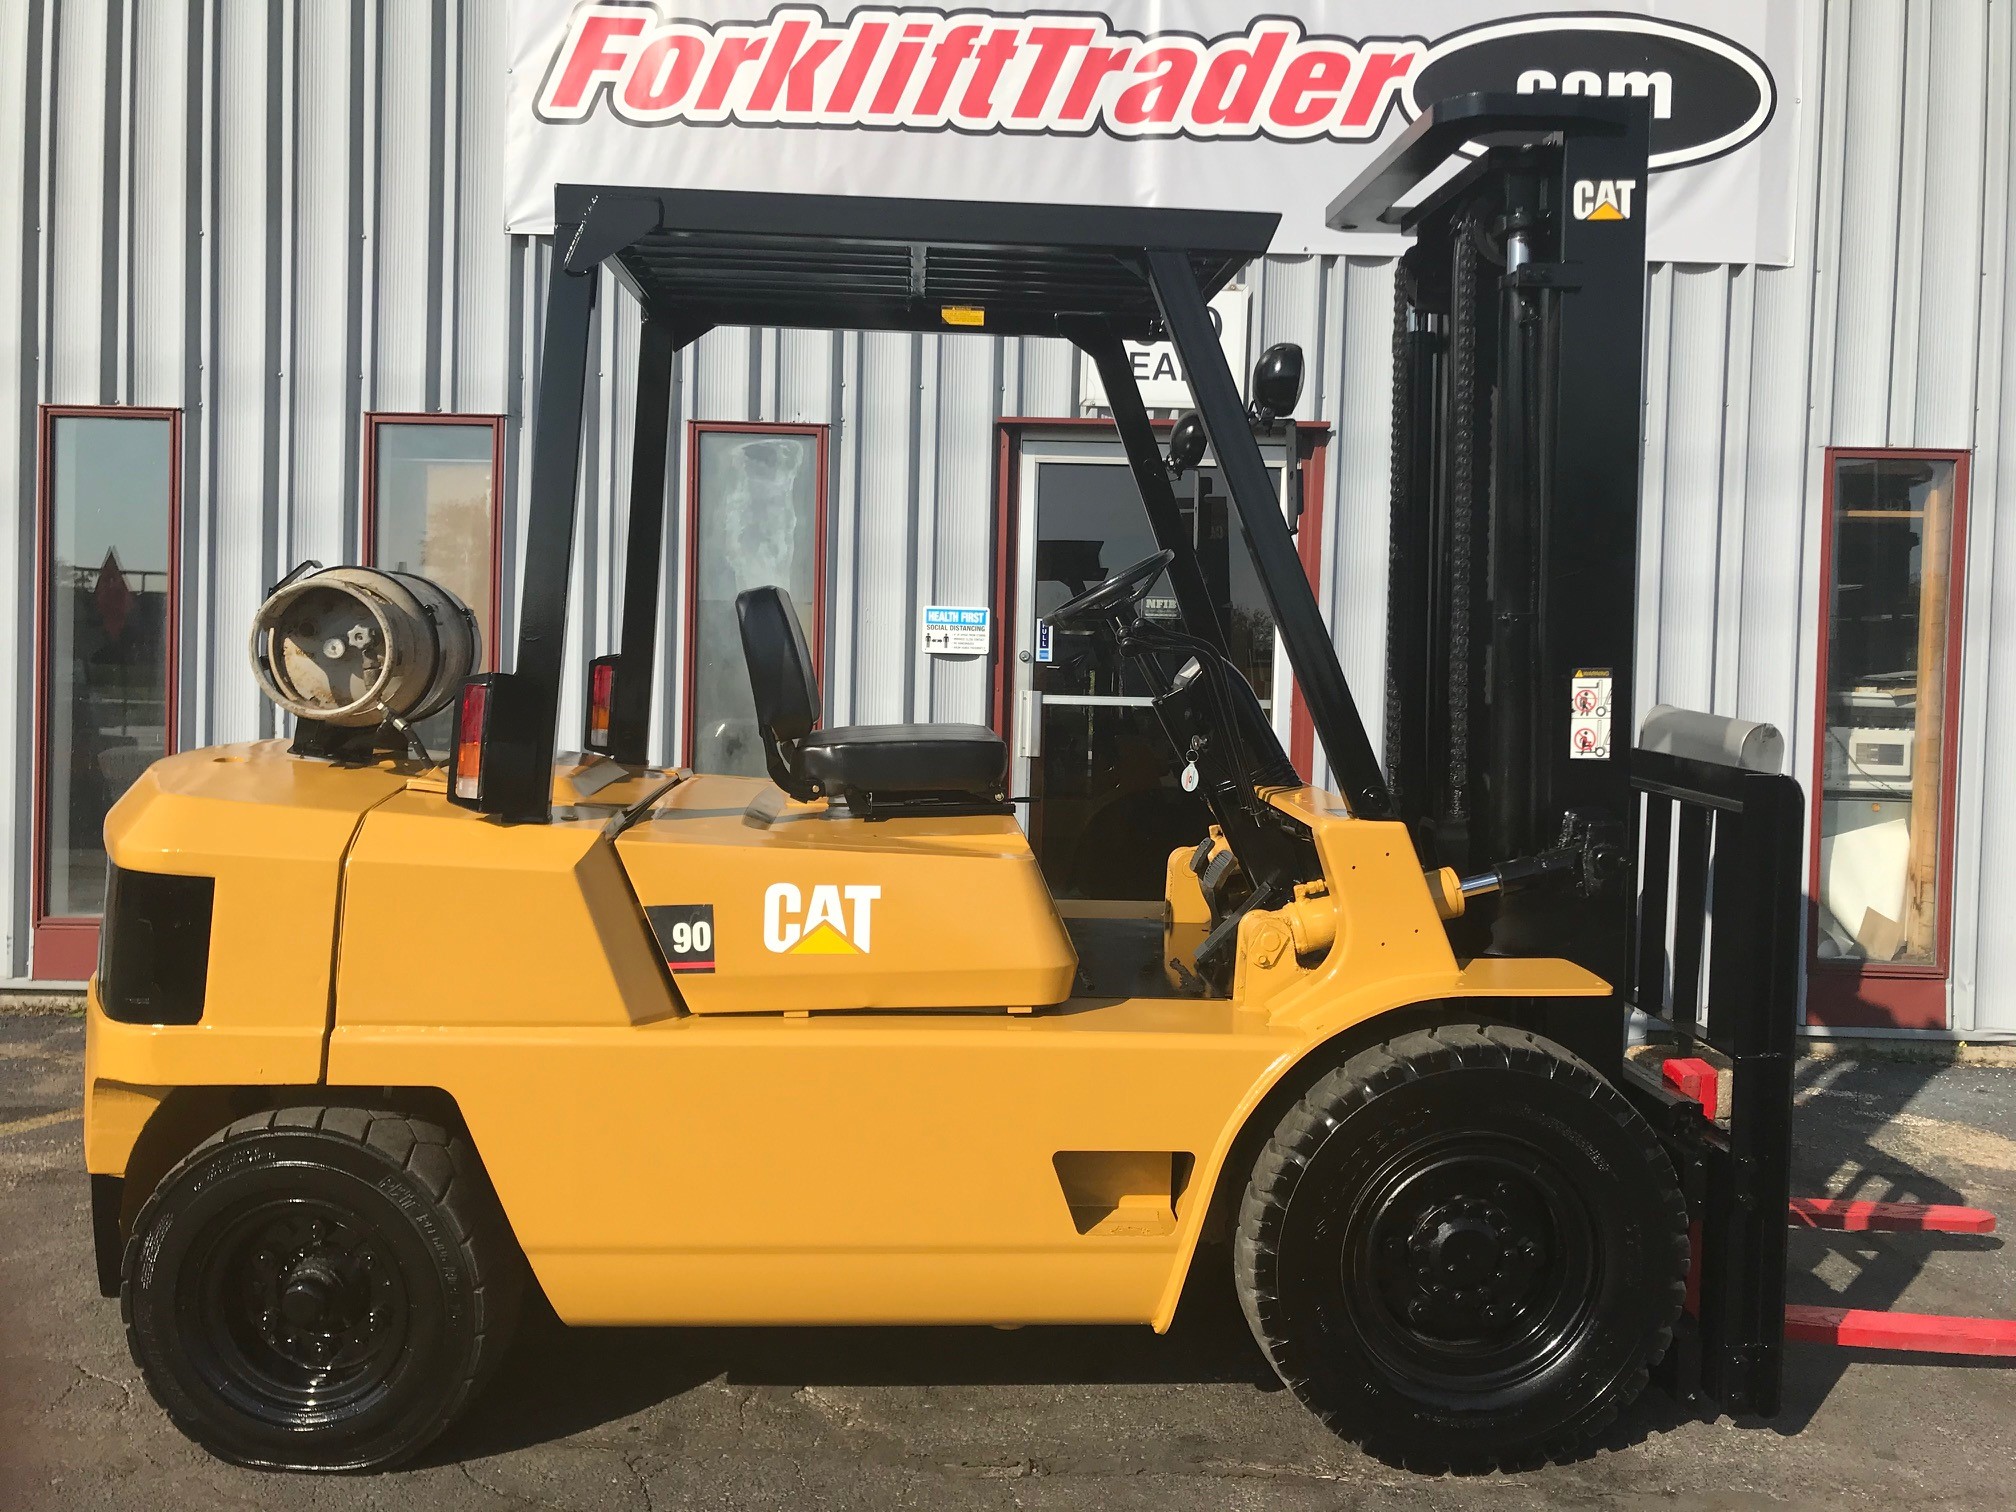 Caterpillar Glp40 8000lb Pneumatic Tire Forklift Forklifttrader Com M W Industrial Equipment Co Waukesha Wisconsin